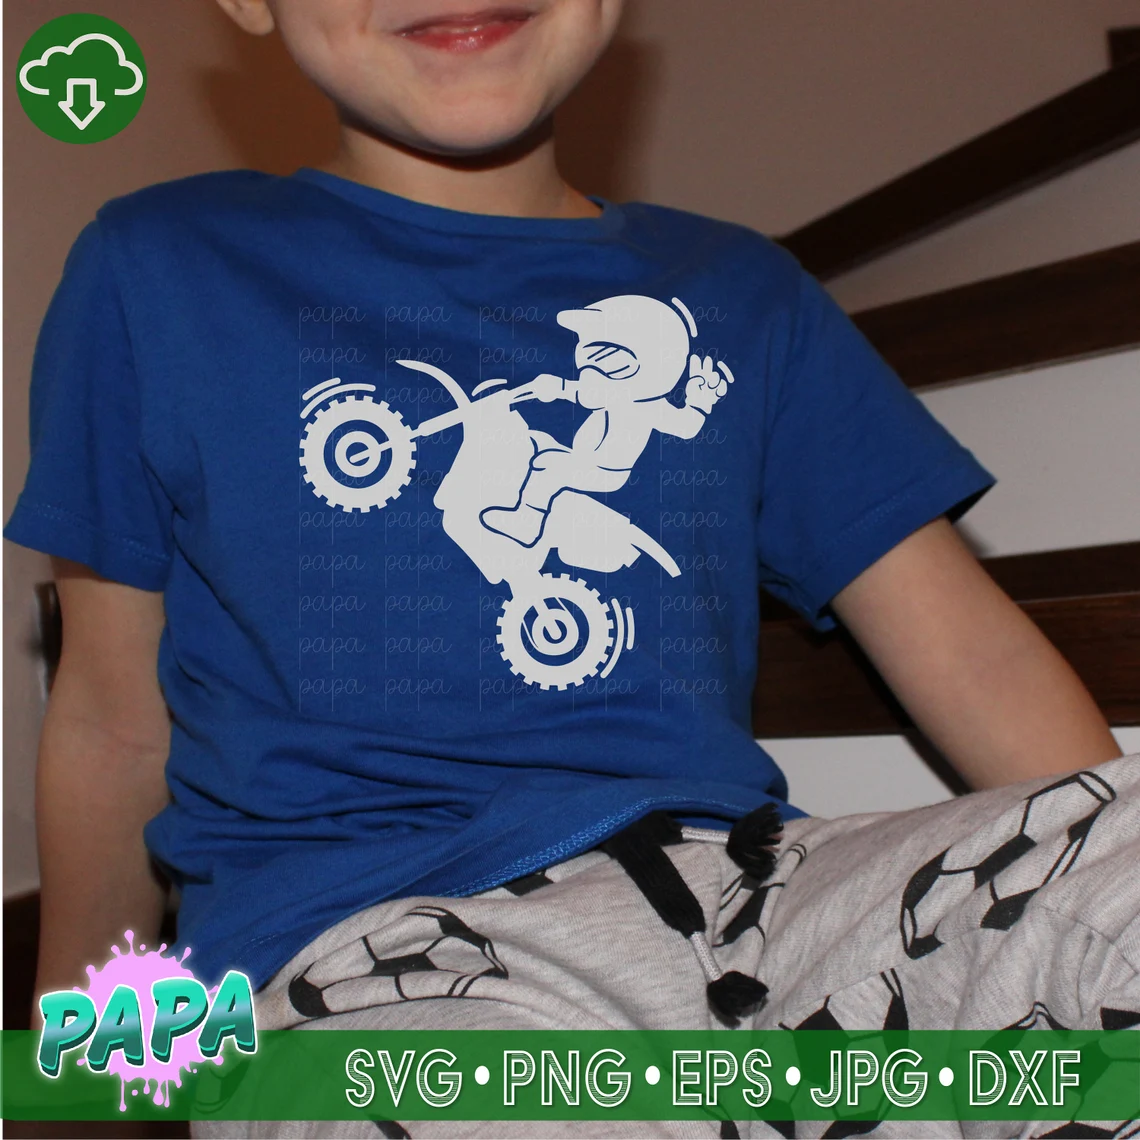 Biker print of a children's motorcyclist on a blue T-shirt.